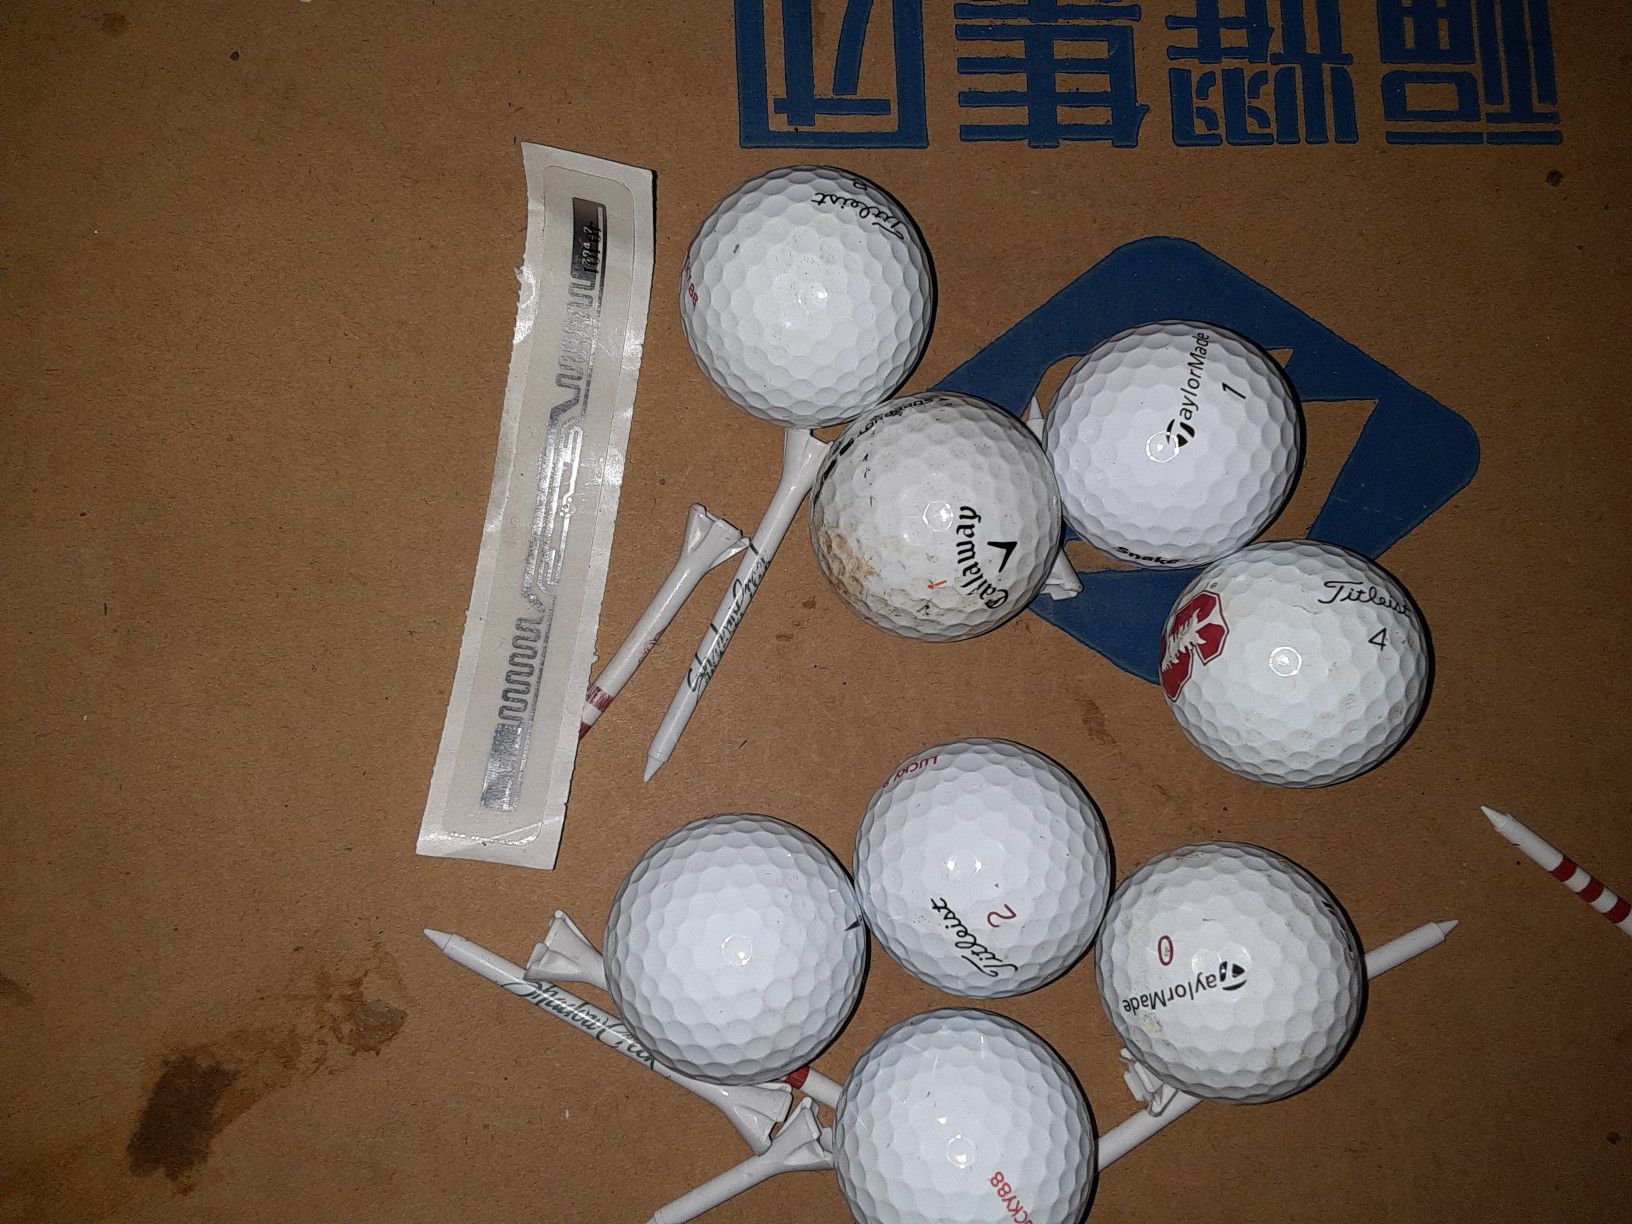 8 Golf balls